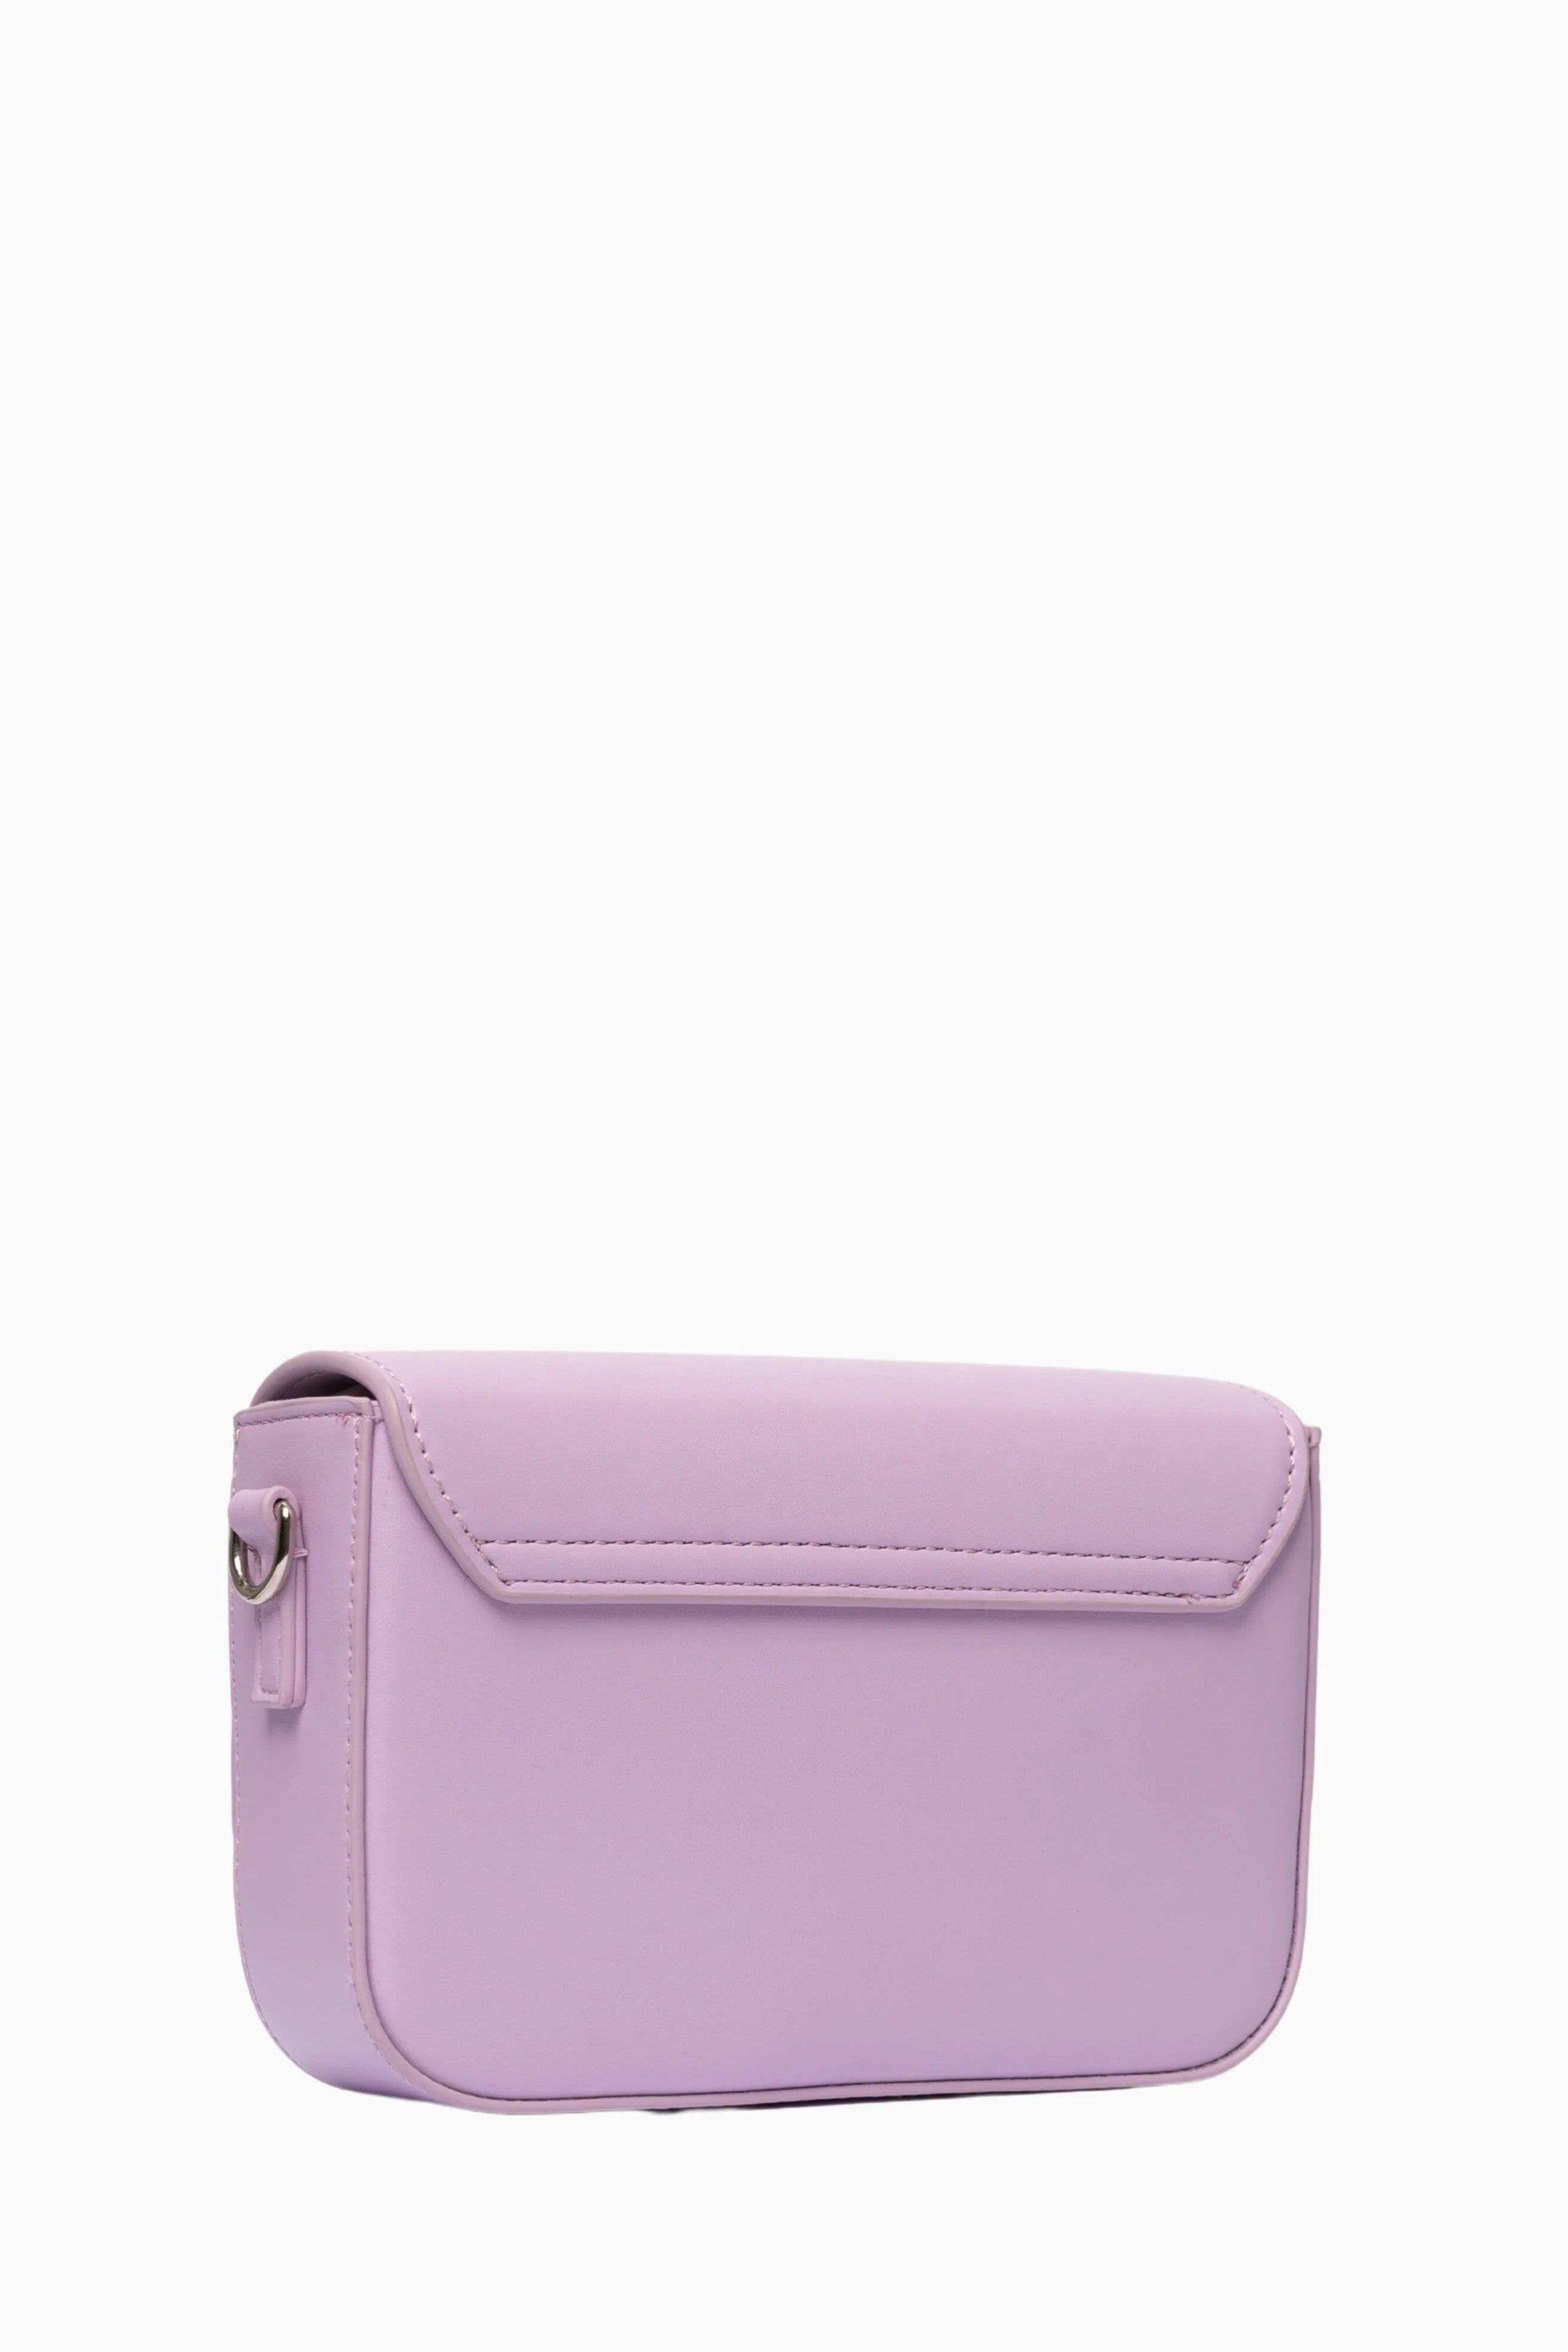 Pantone Lilac Bag